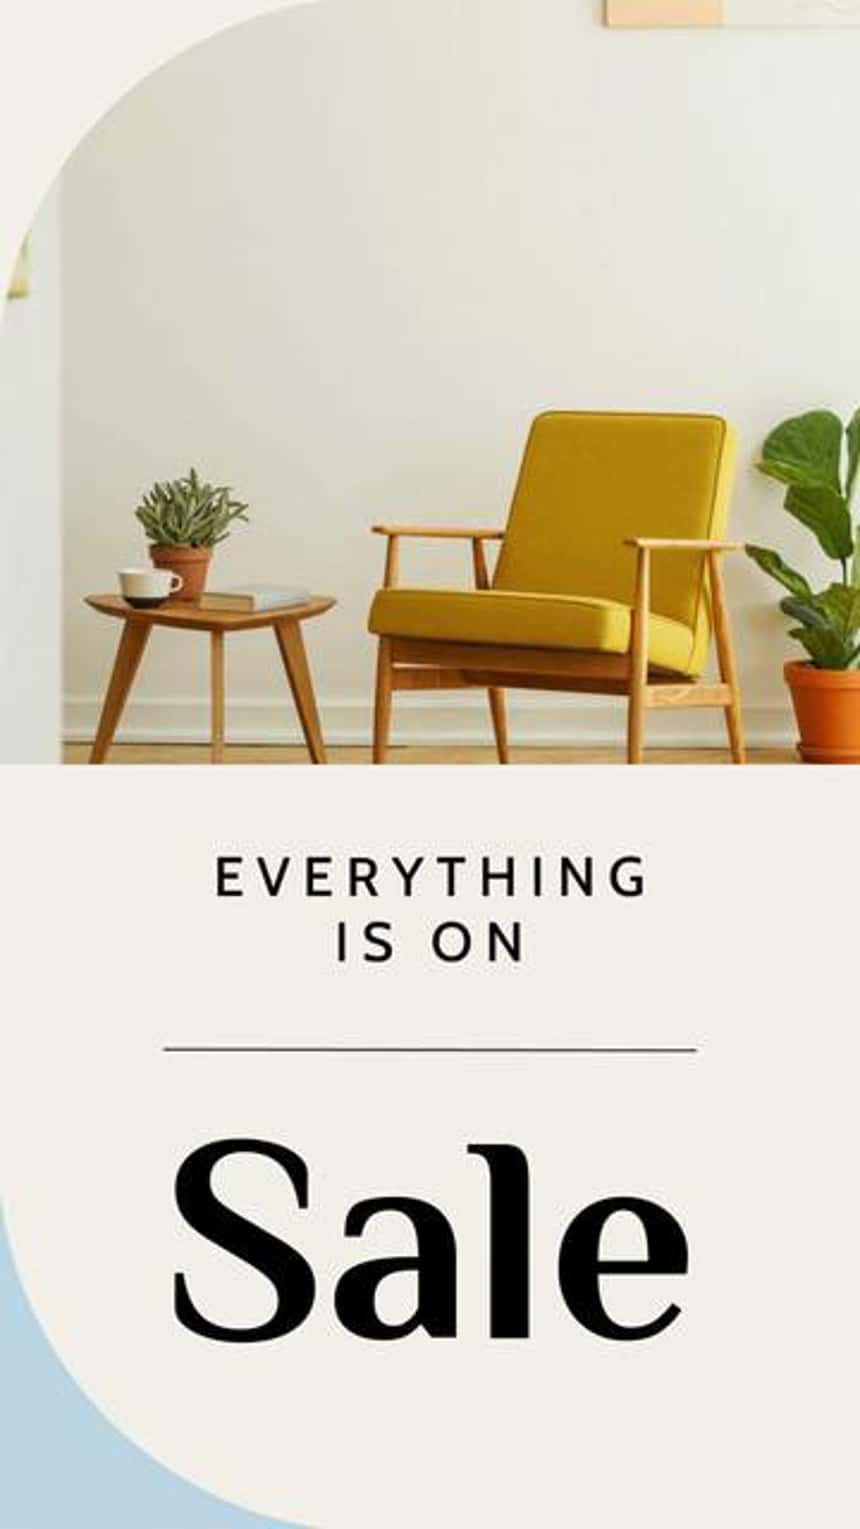 Plantilla de anuncio de video en Instagram para un negocio de muebles con una imagen de una silla amarilla, plantas y una mesa auxiliar. El texto de la imagen dice “Todo está a la venta”.